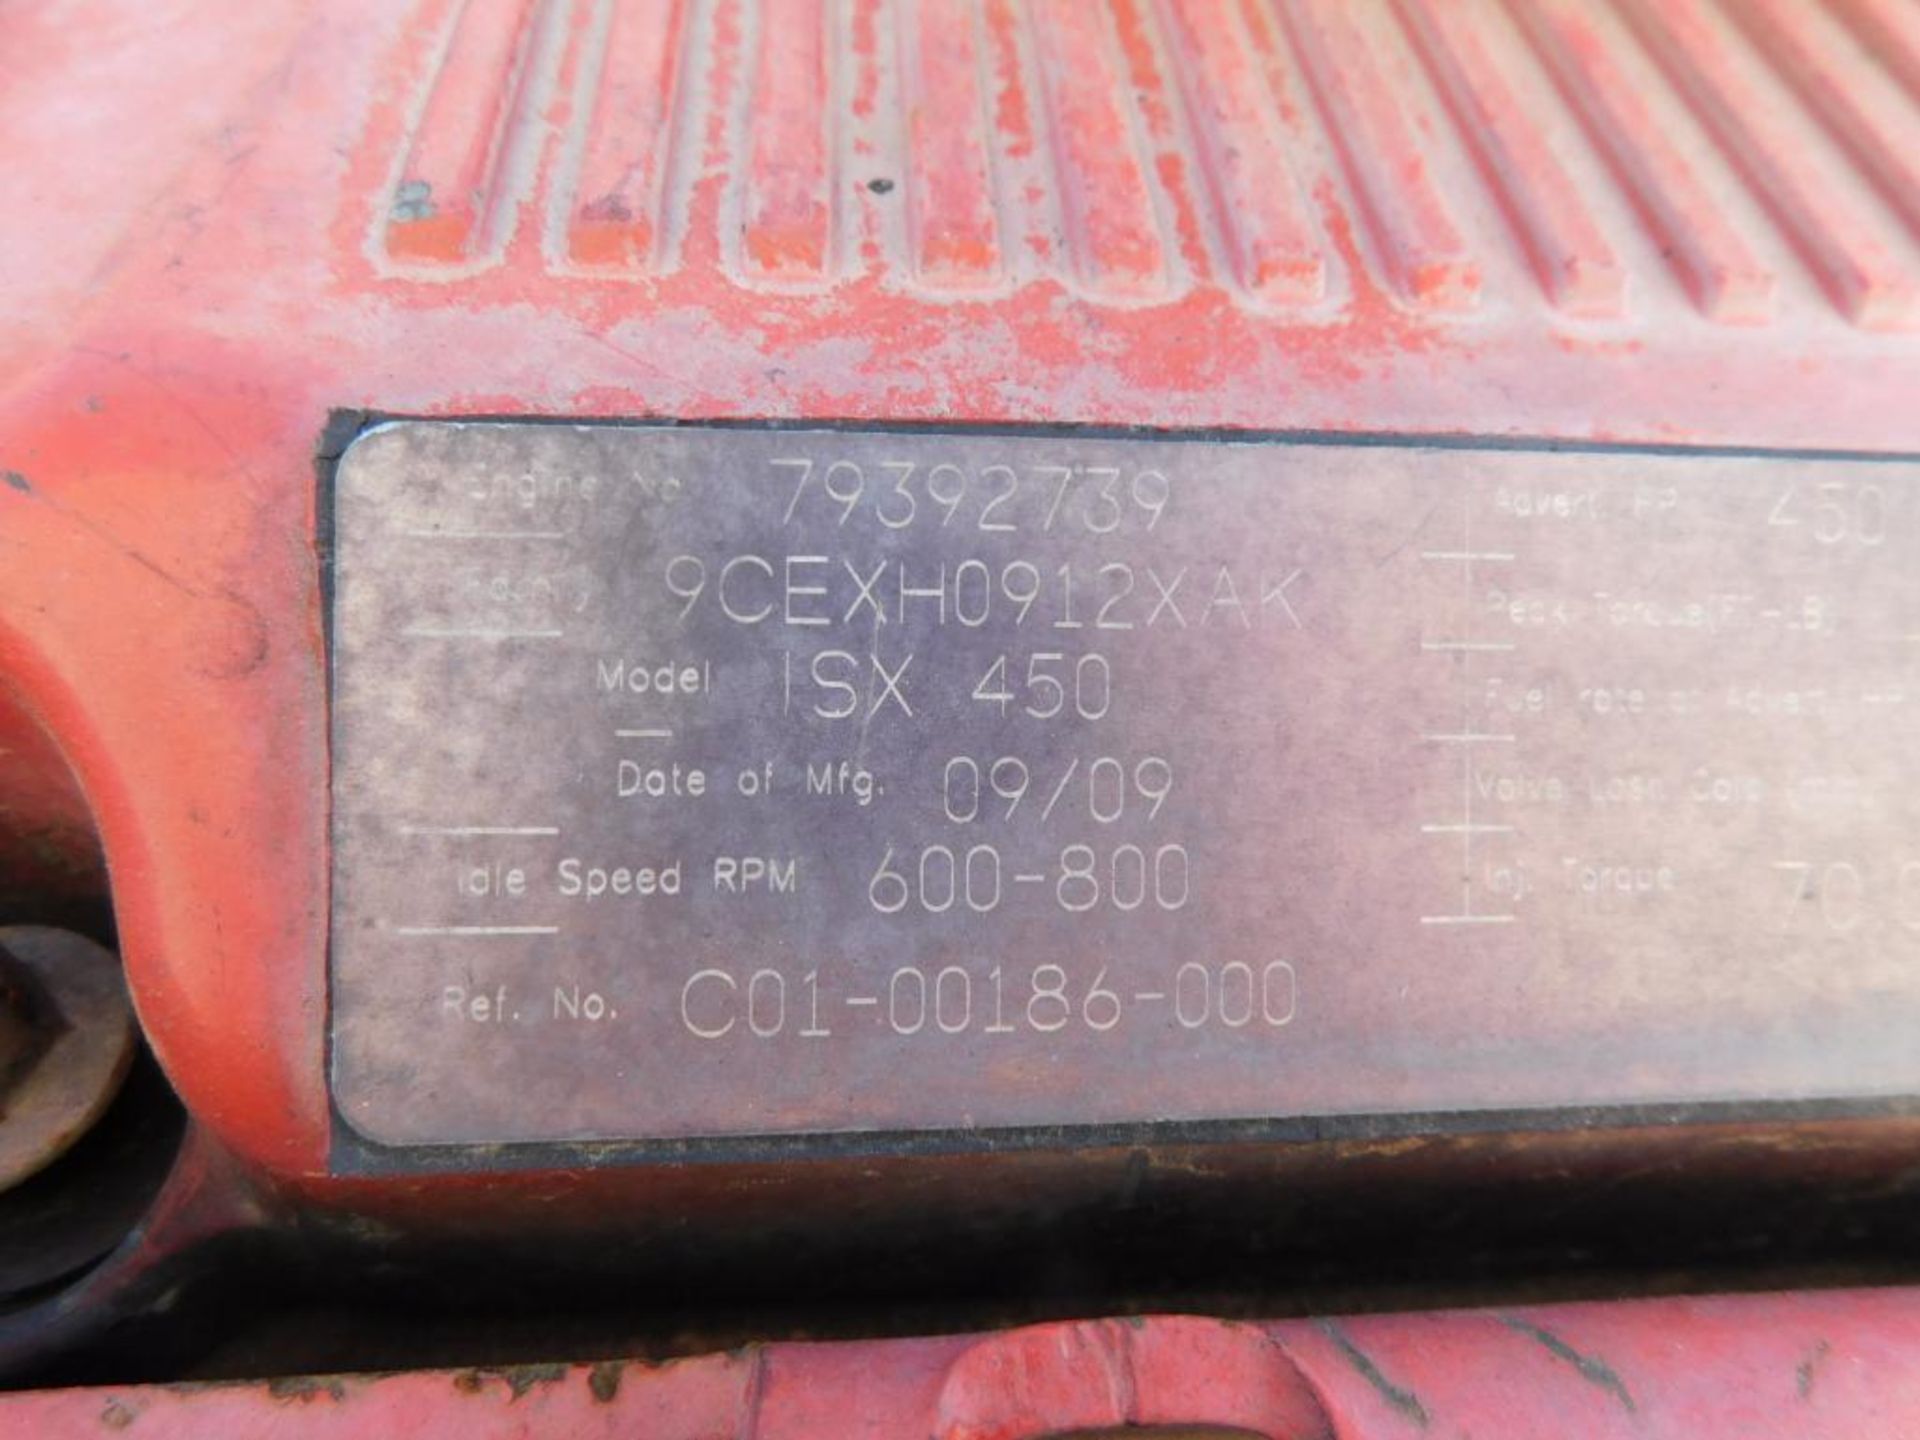 Cummins Diesel Truck Engine, Model SX450, Engine #: 79392739, Mfg. Date: 09/09 (AS IS) - Image 6 of 7